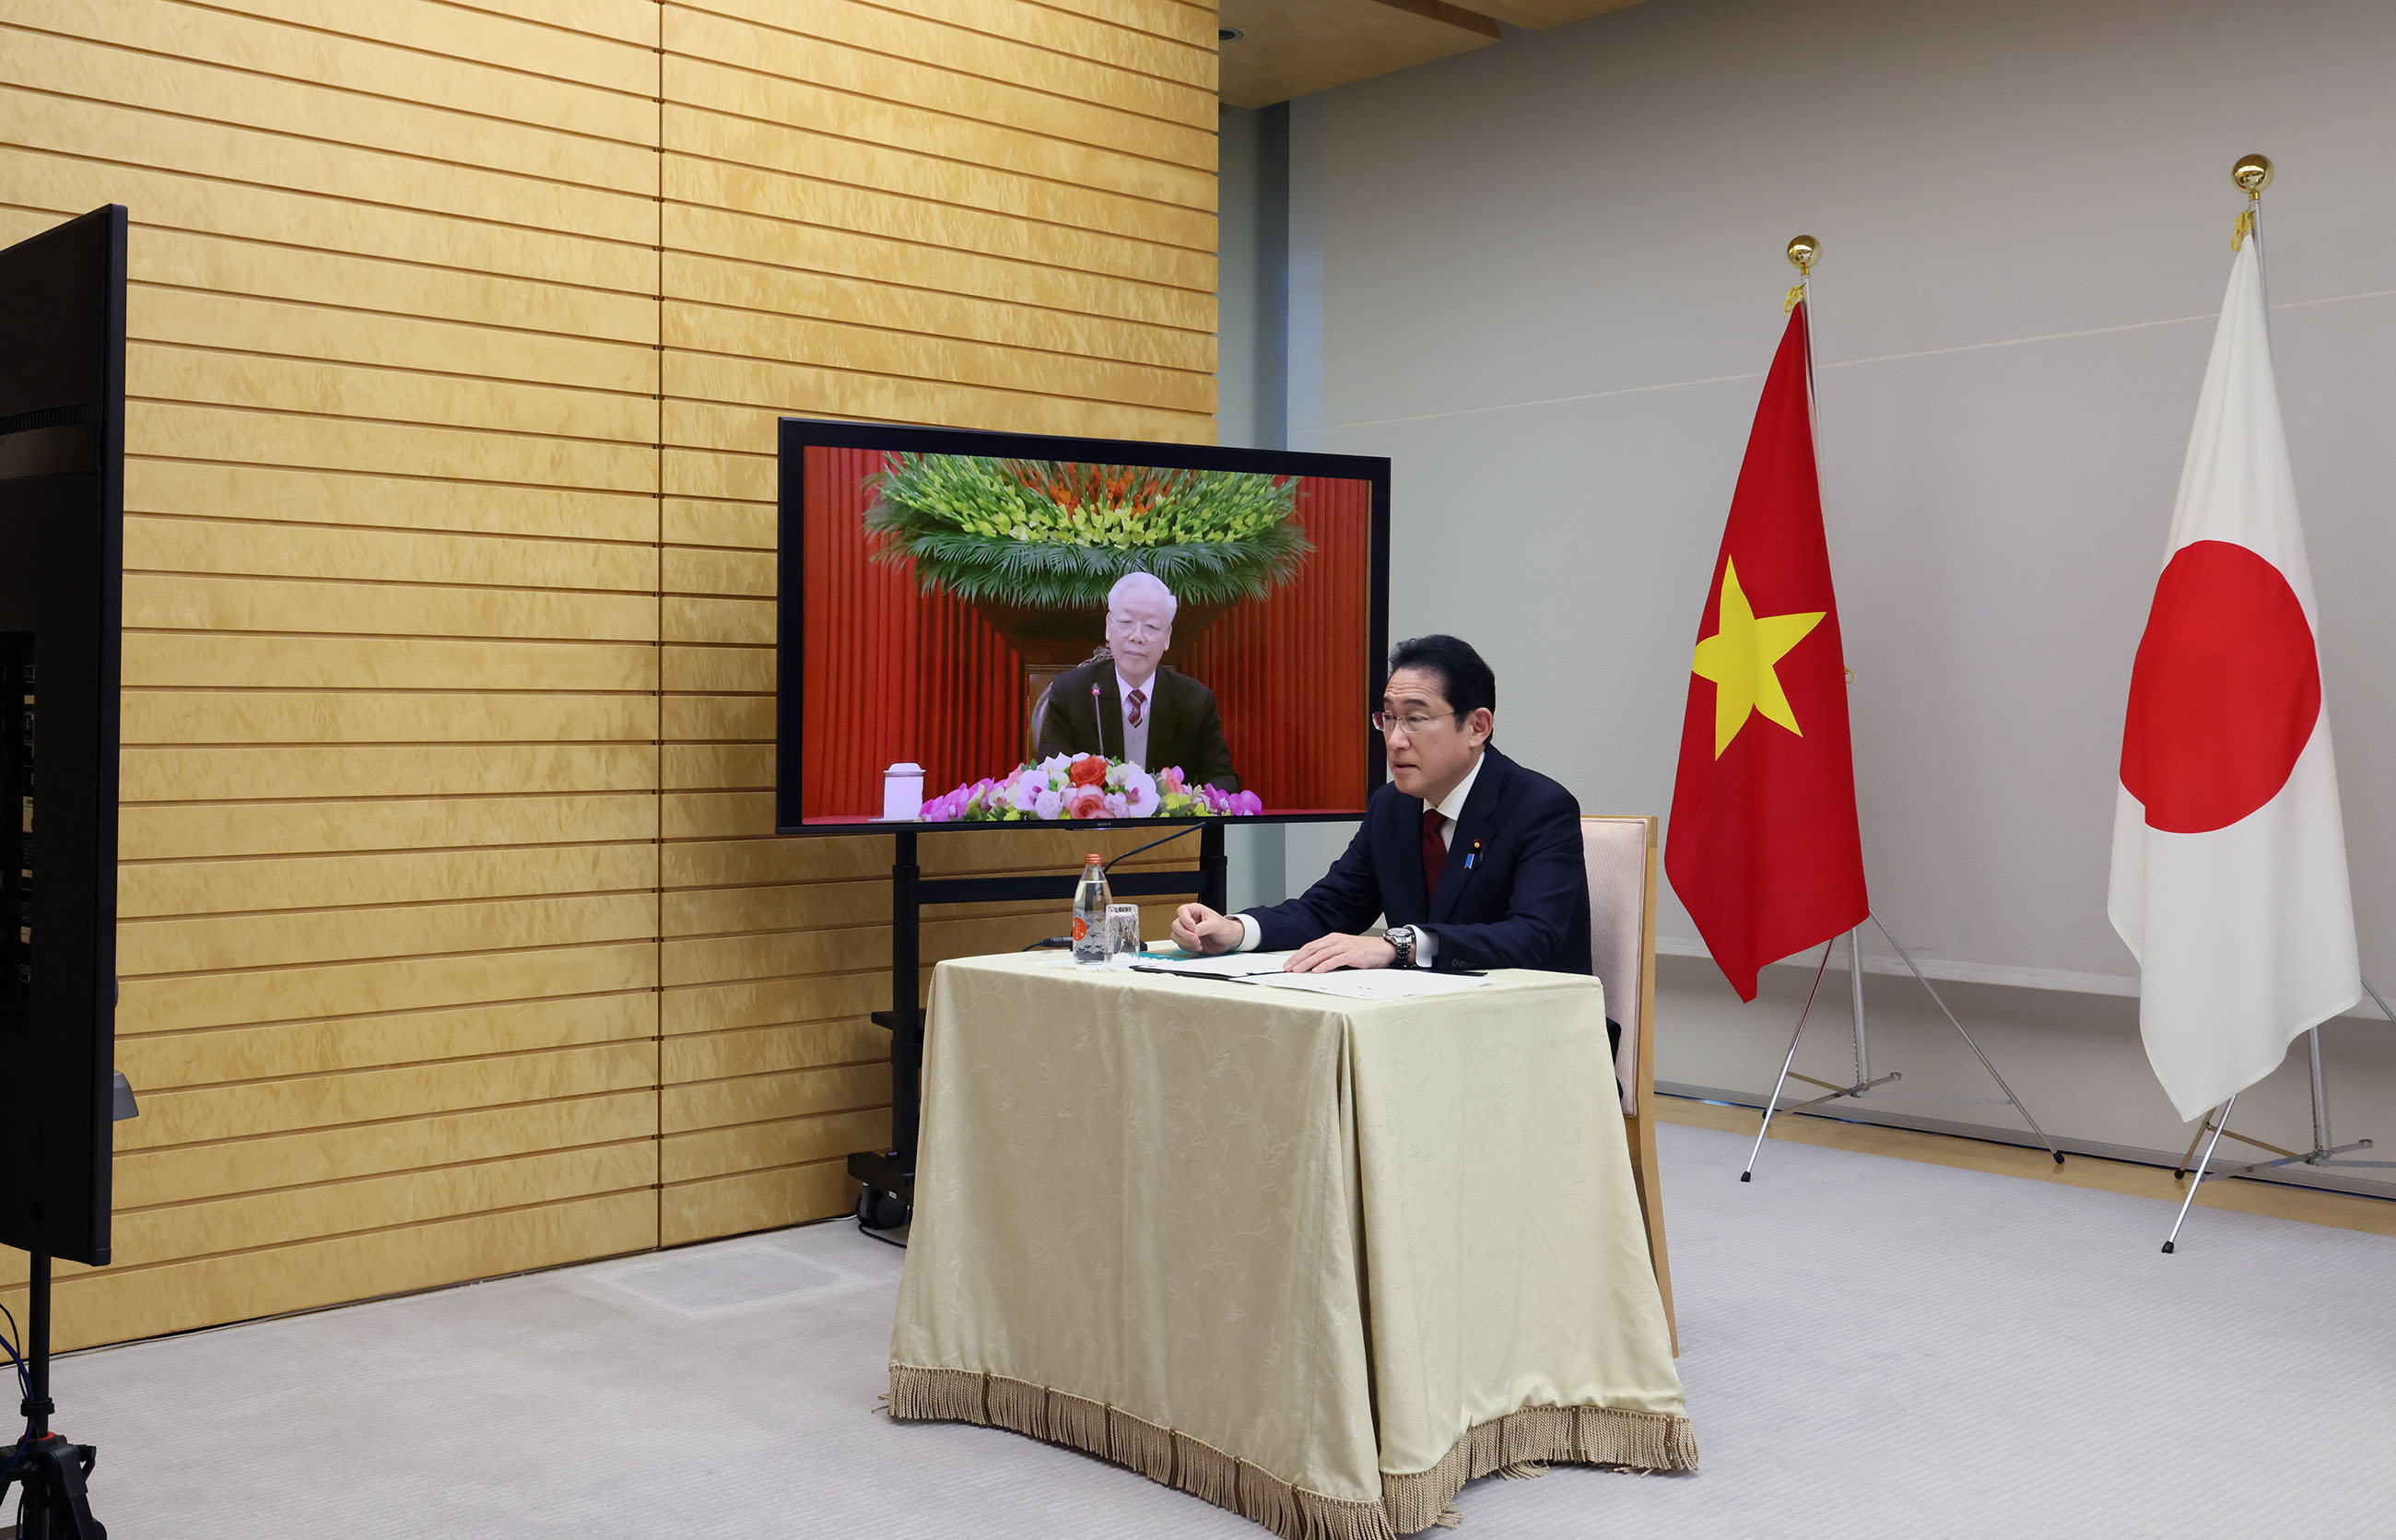 チョン・ベトナム共産党書記長とテレビ会談を行う岸田総理３